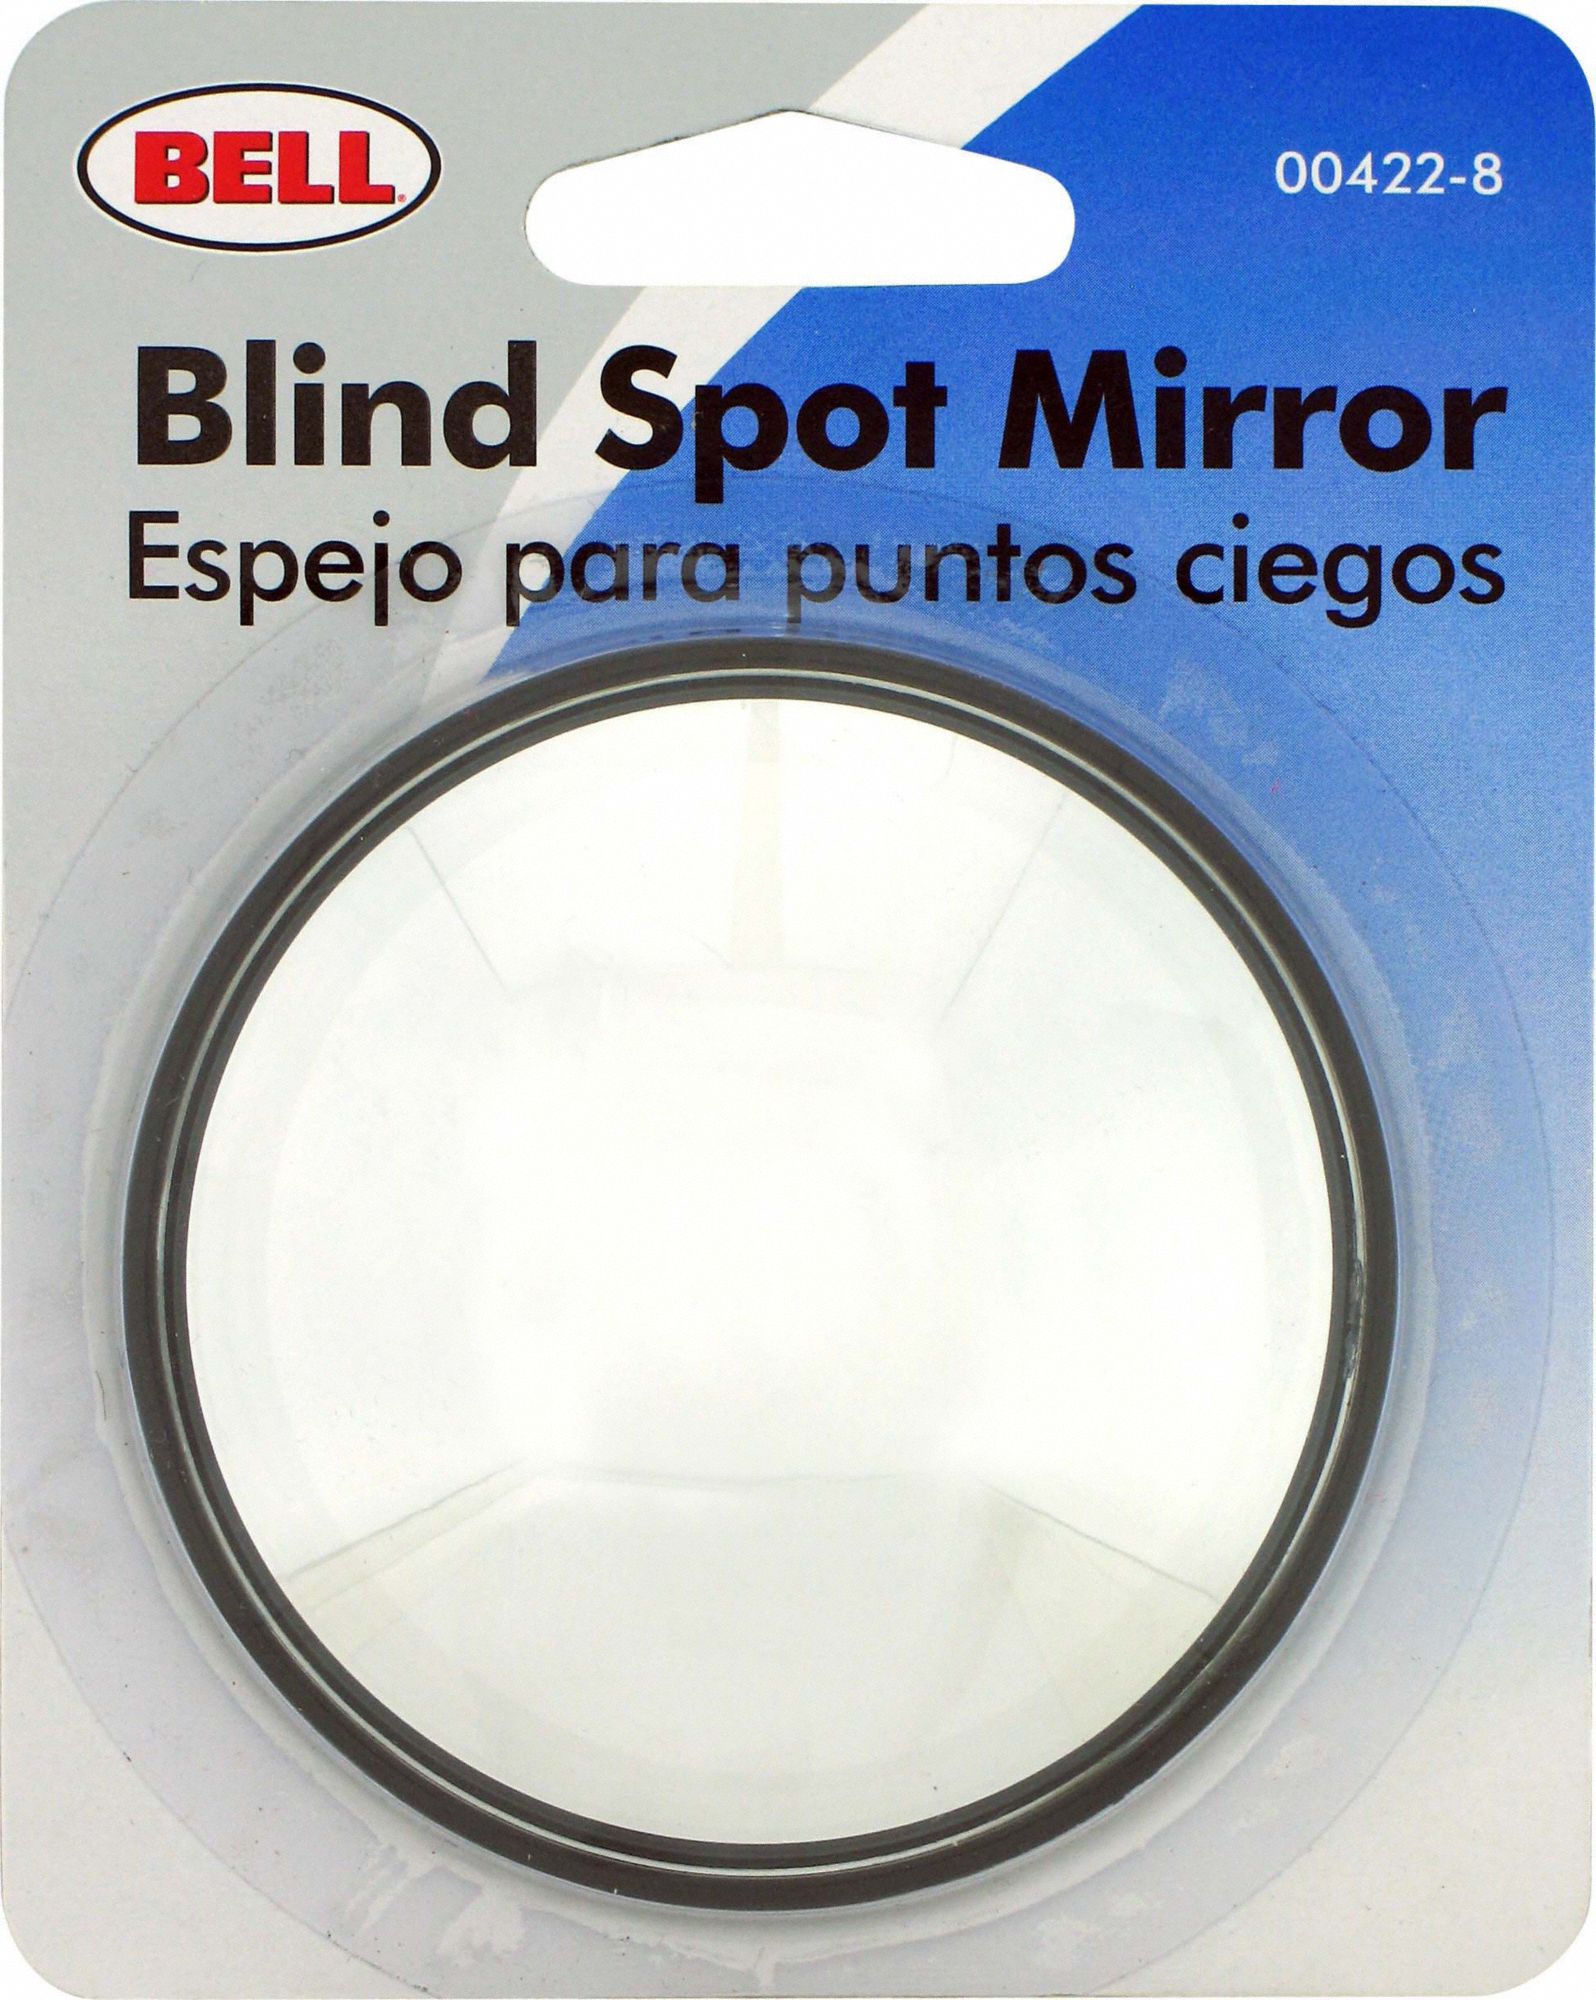 Bell Blind Spot Mirror 